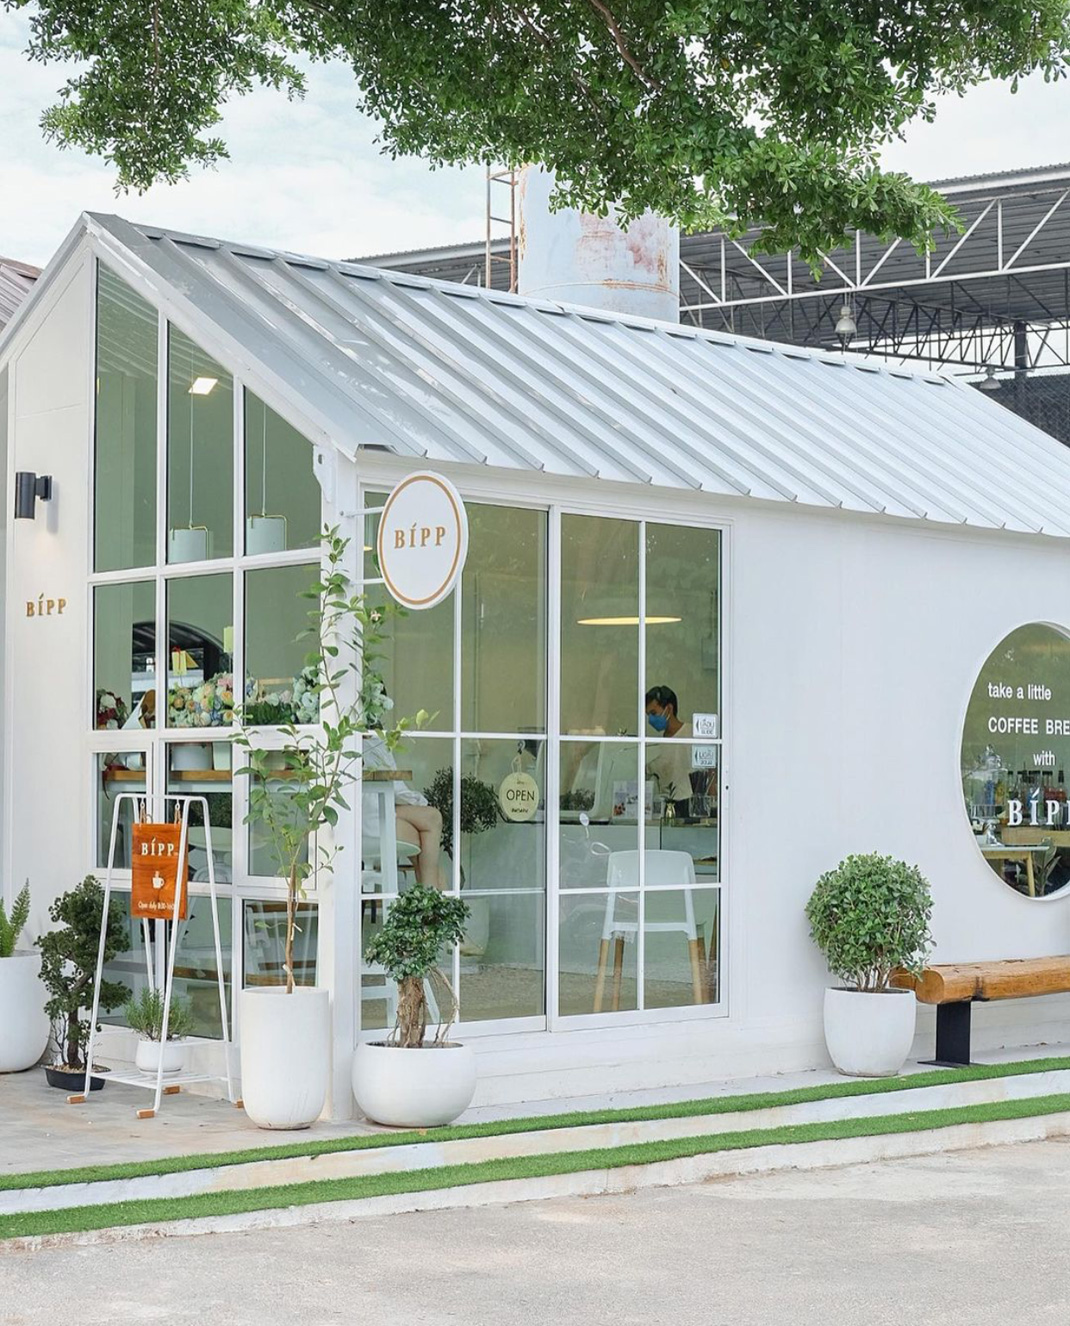 咖啡店BIPP Cafe 泰国 咖啡店 白色空间 绿植 logo设计 vi设计 空间设计